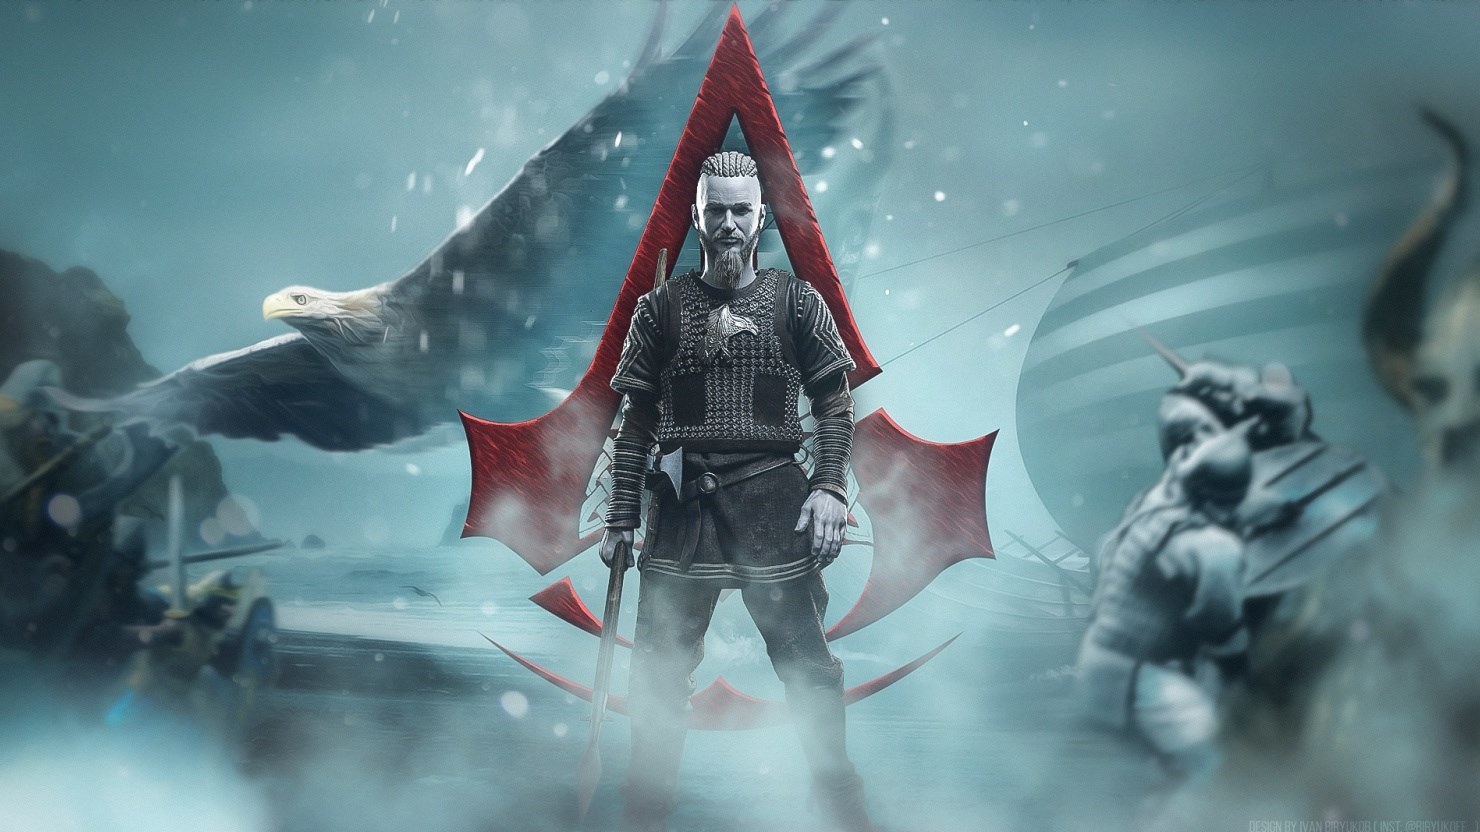 Cлyxи oбeщaют Kиeвcкyю Pycь в Assassin's Creed Ragnarok